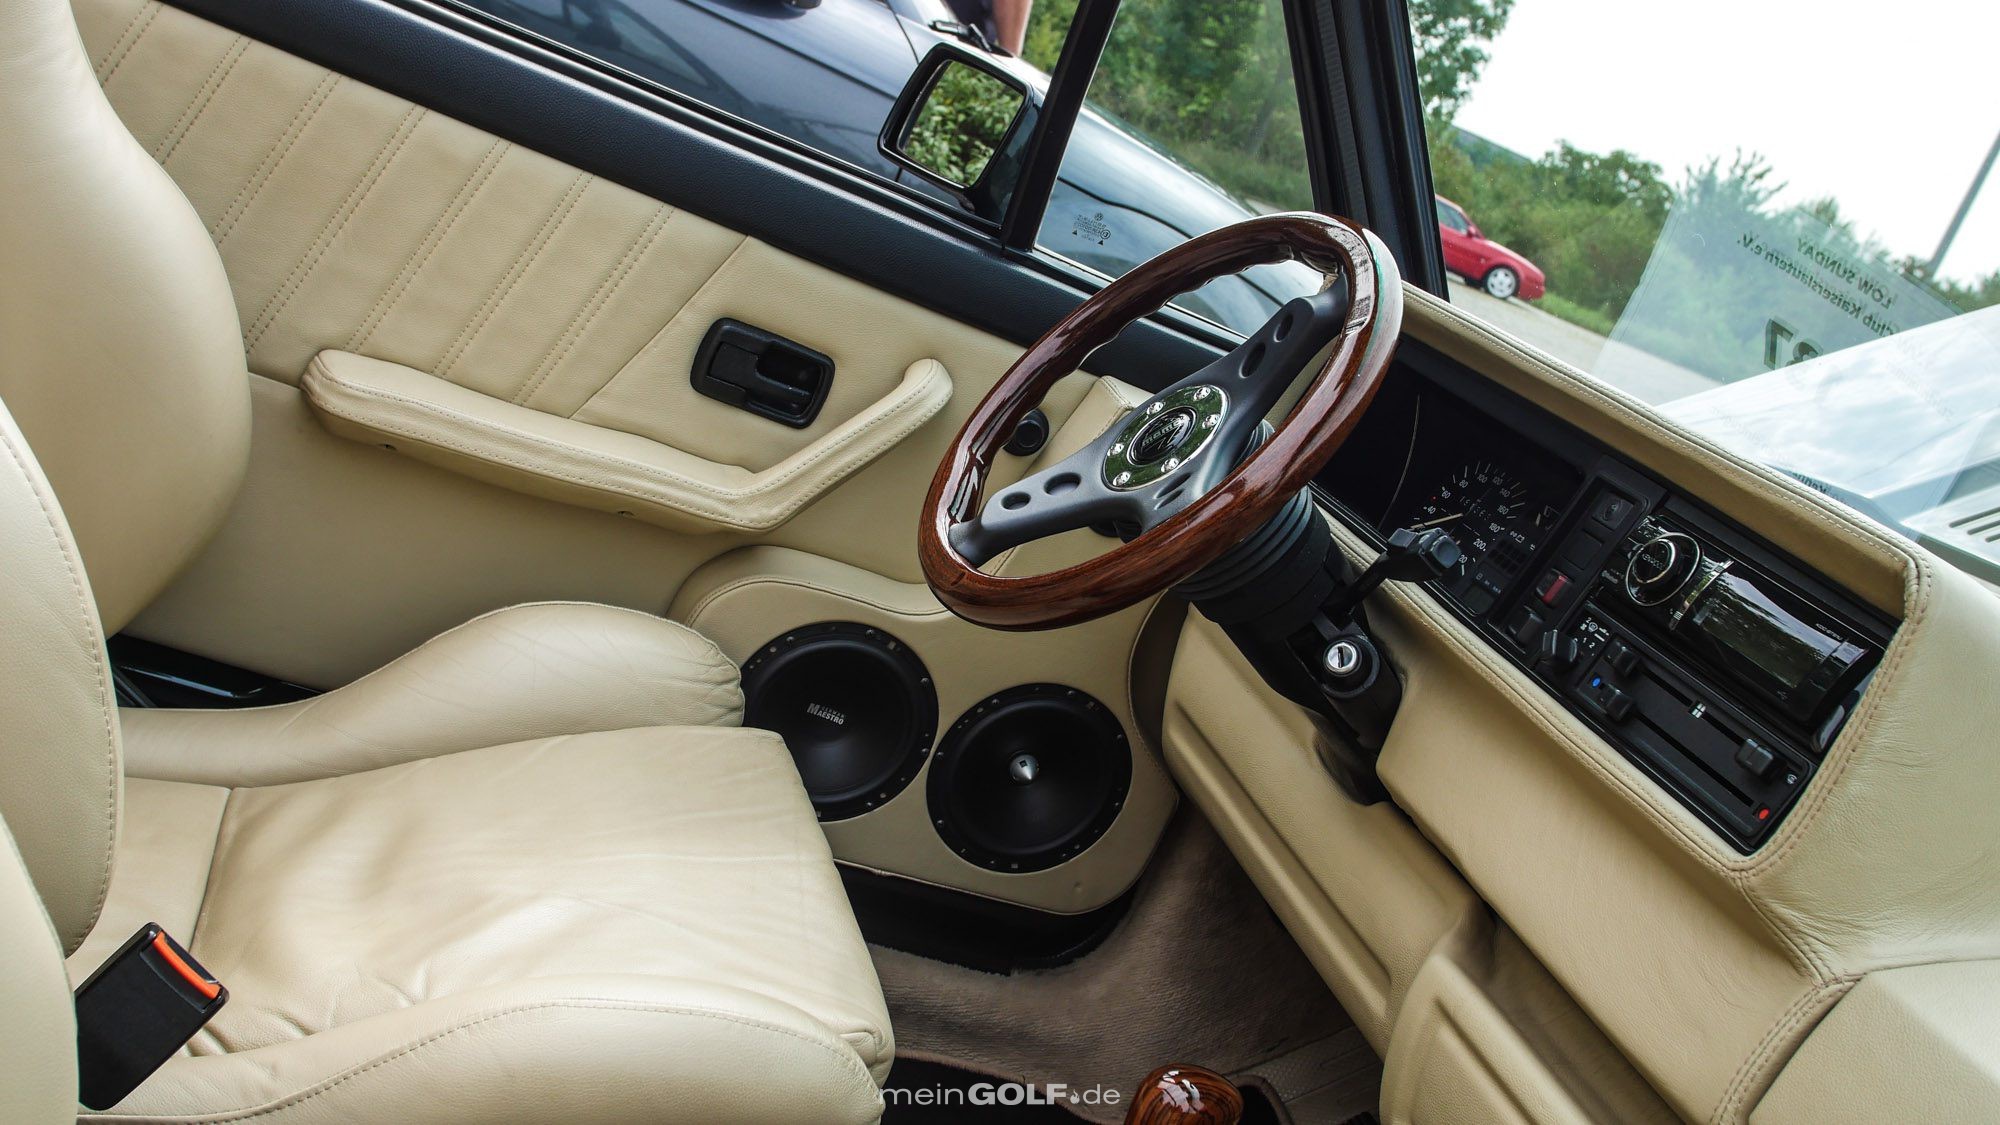 Holz und Leder dominieren den Innenraum des VW Golf Cabrio!